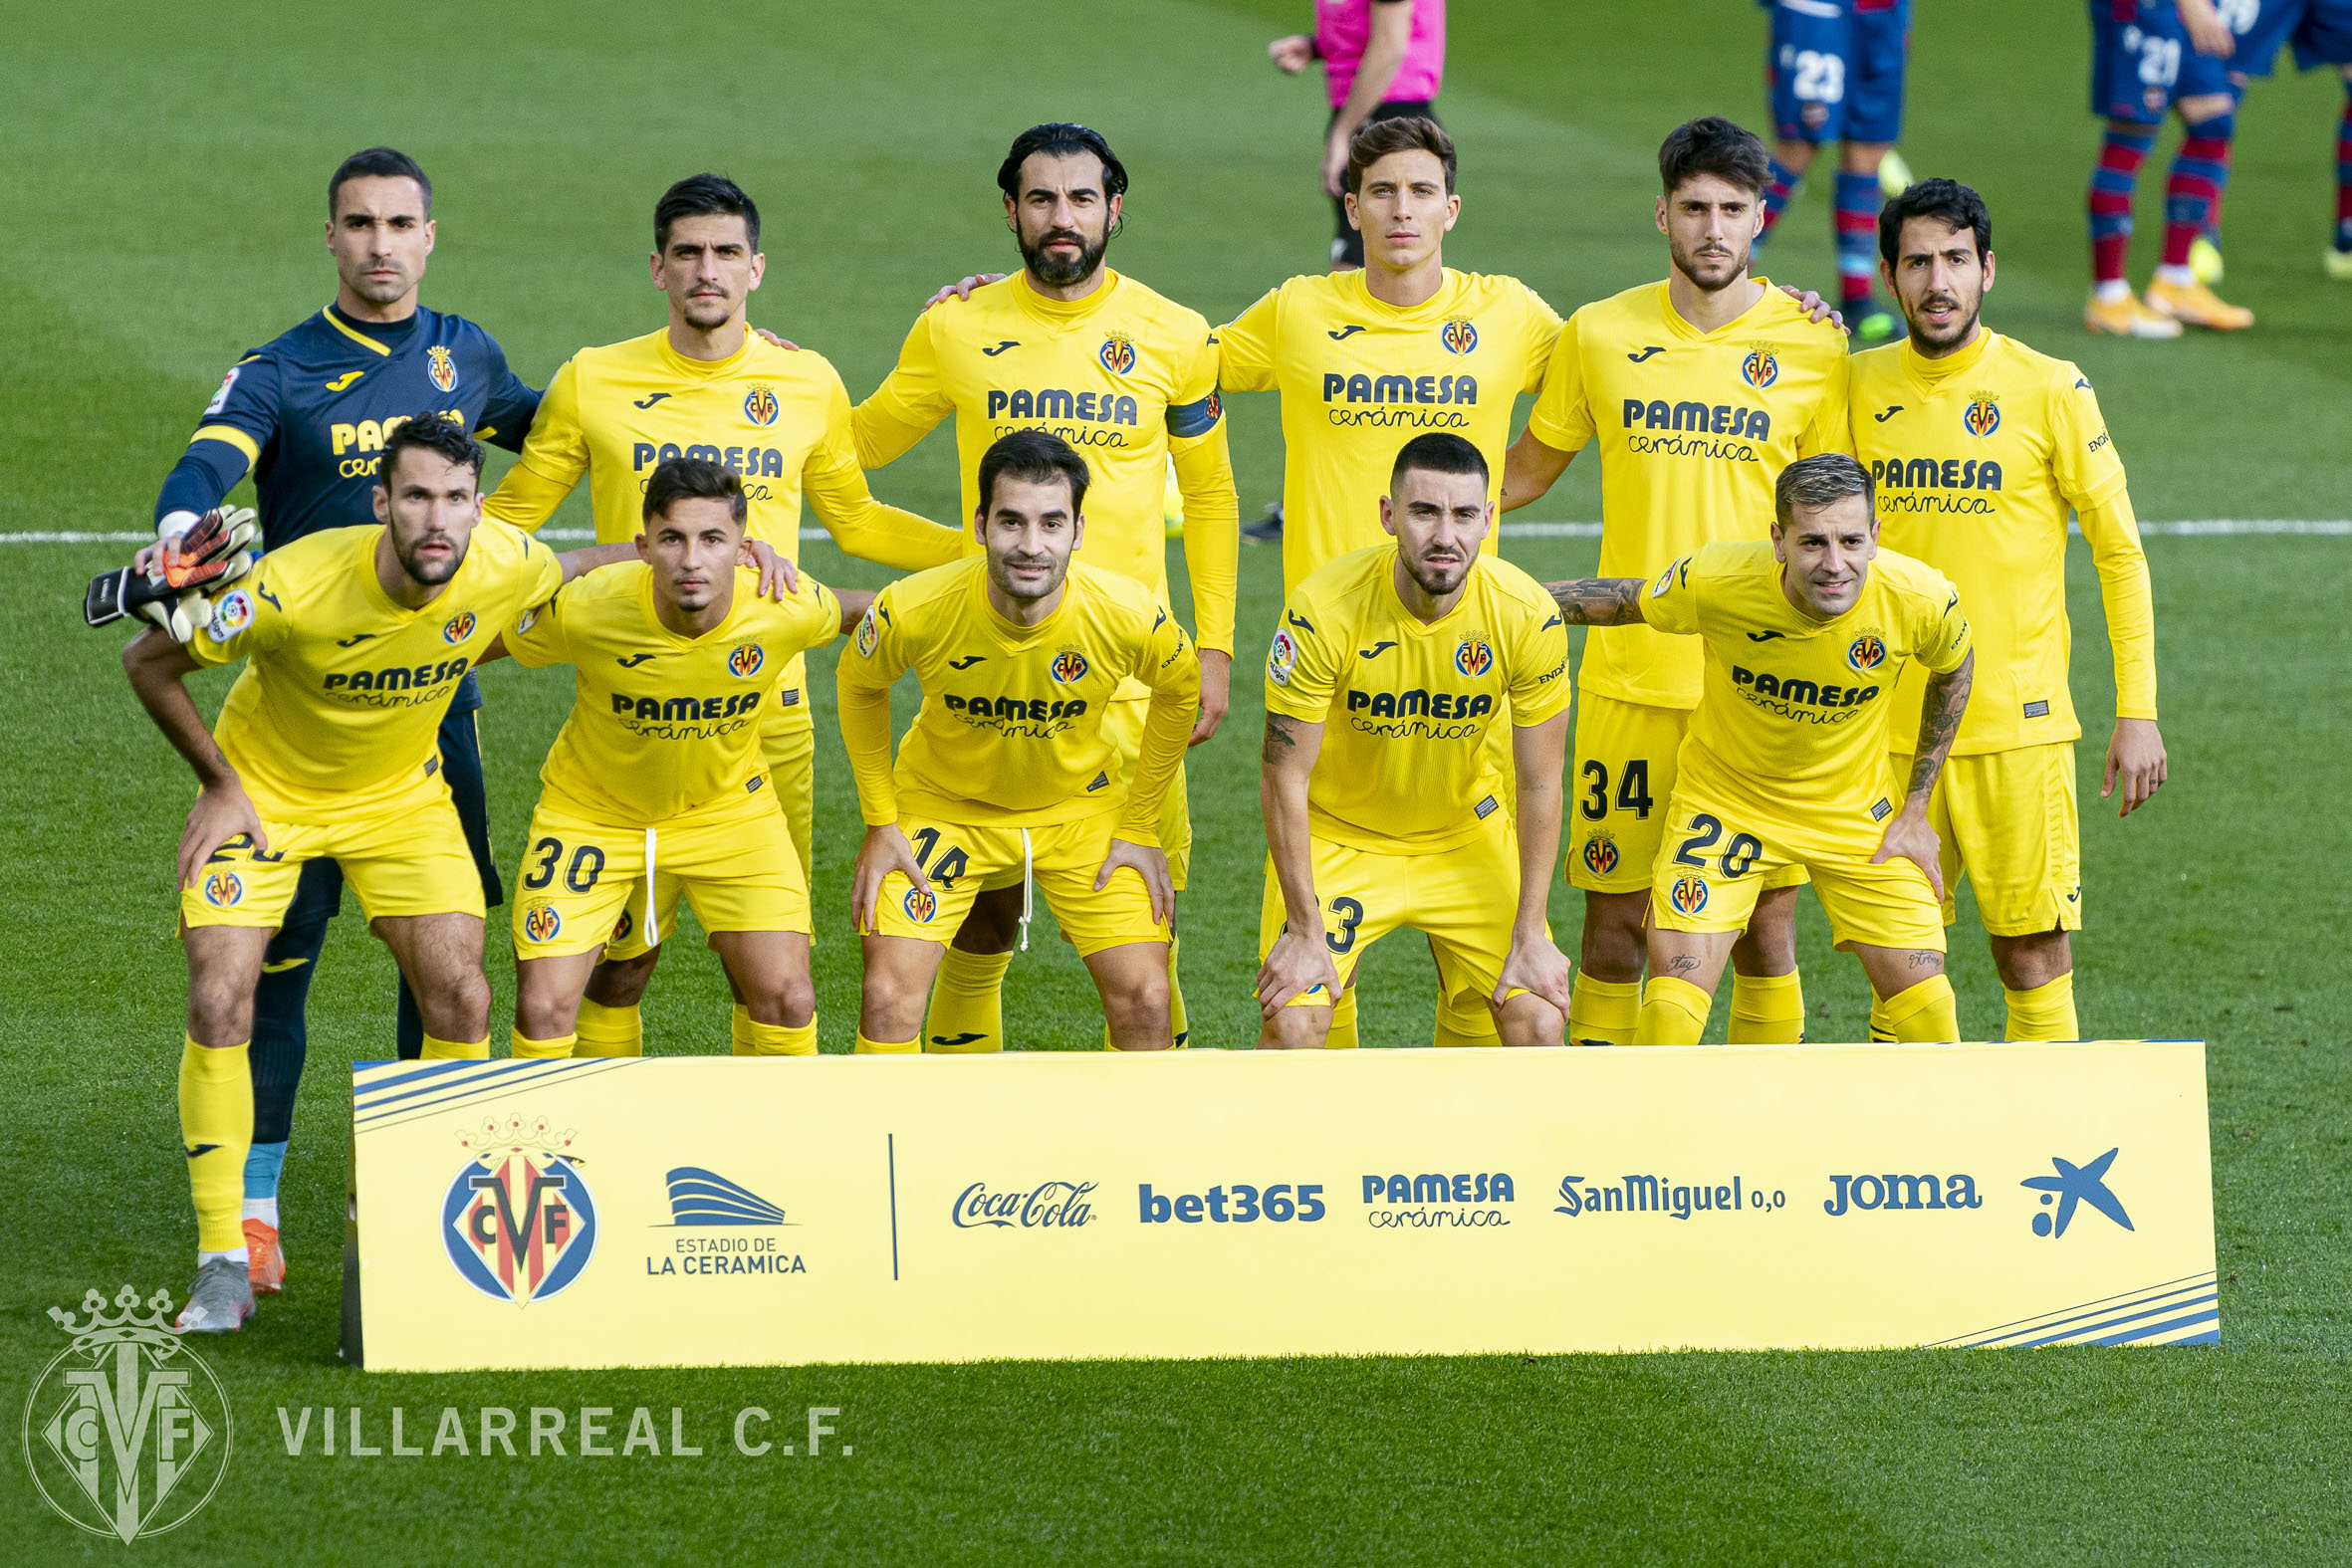 El Villarreal CF, rival del CD Tenerife en los 1/16 de la Copa del Rey